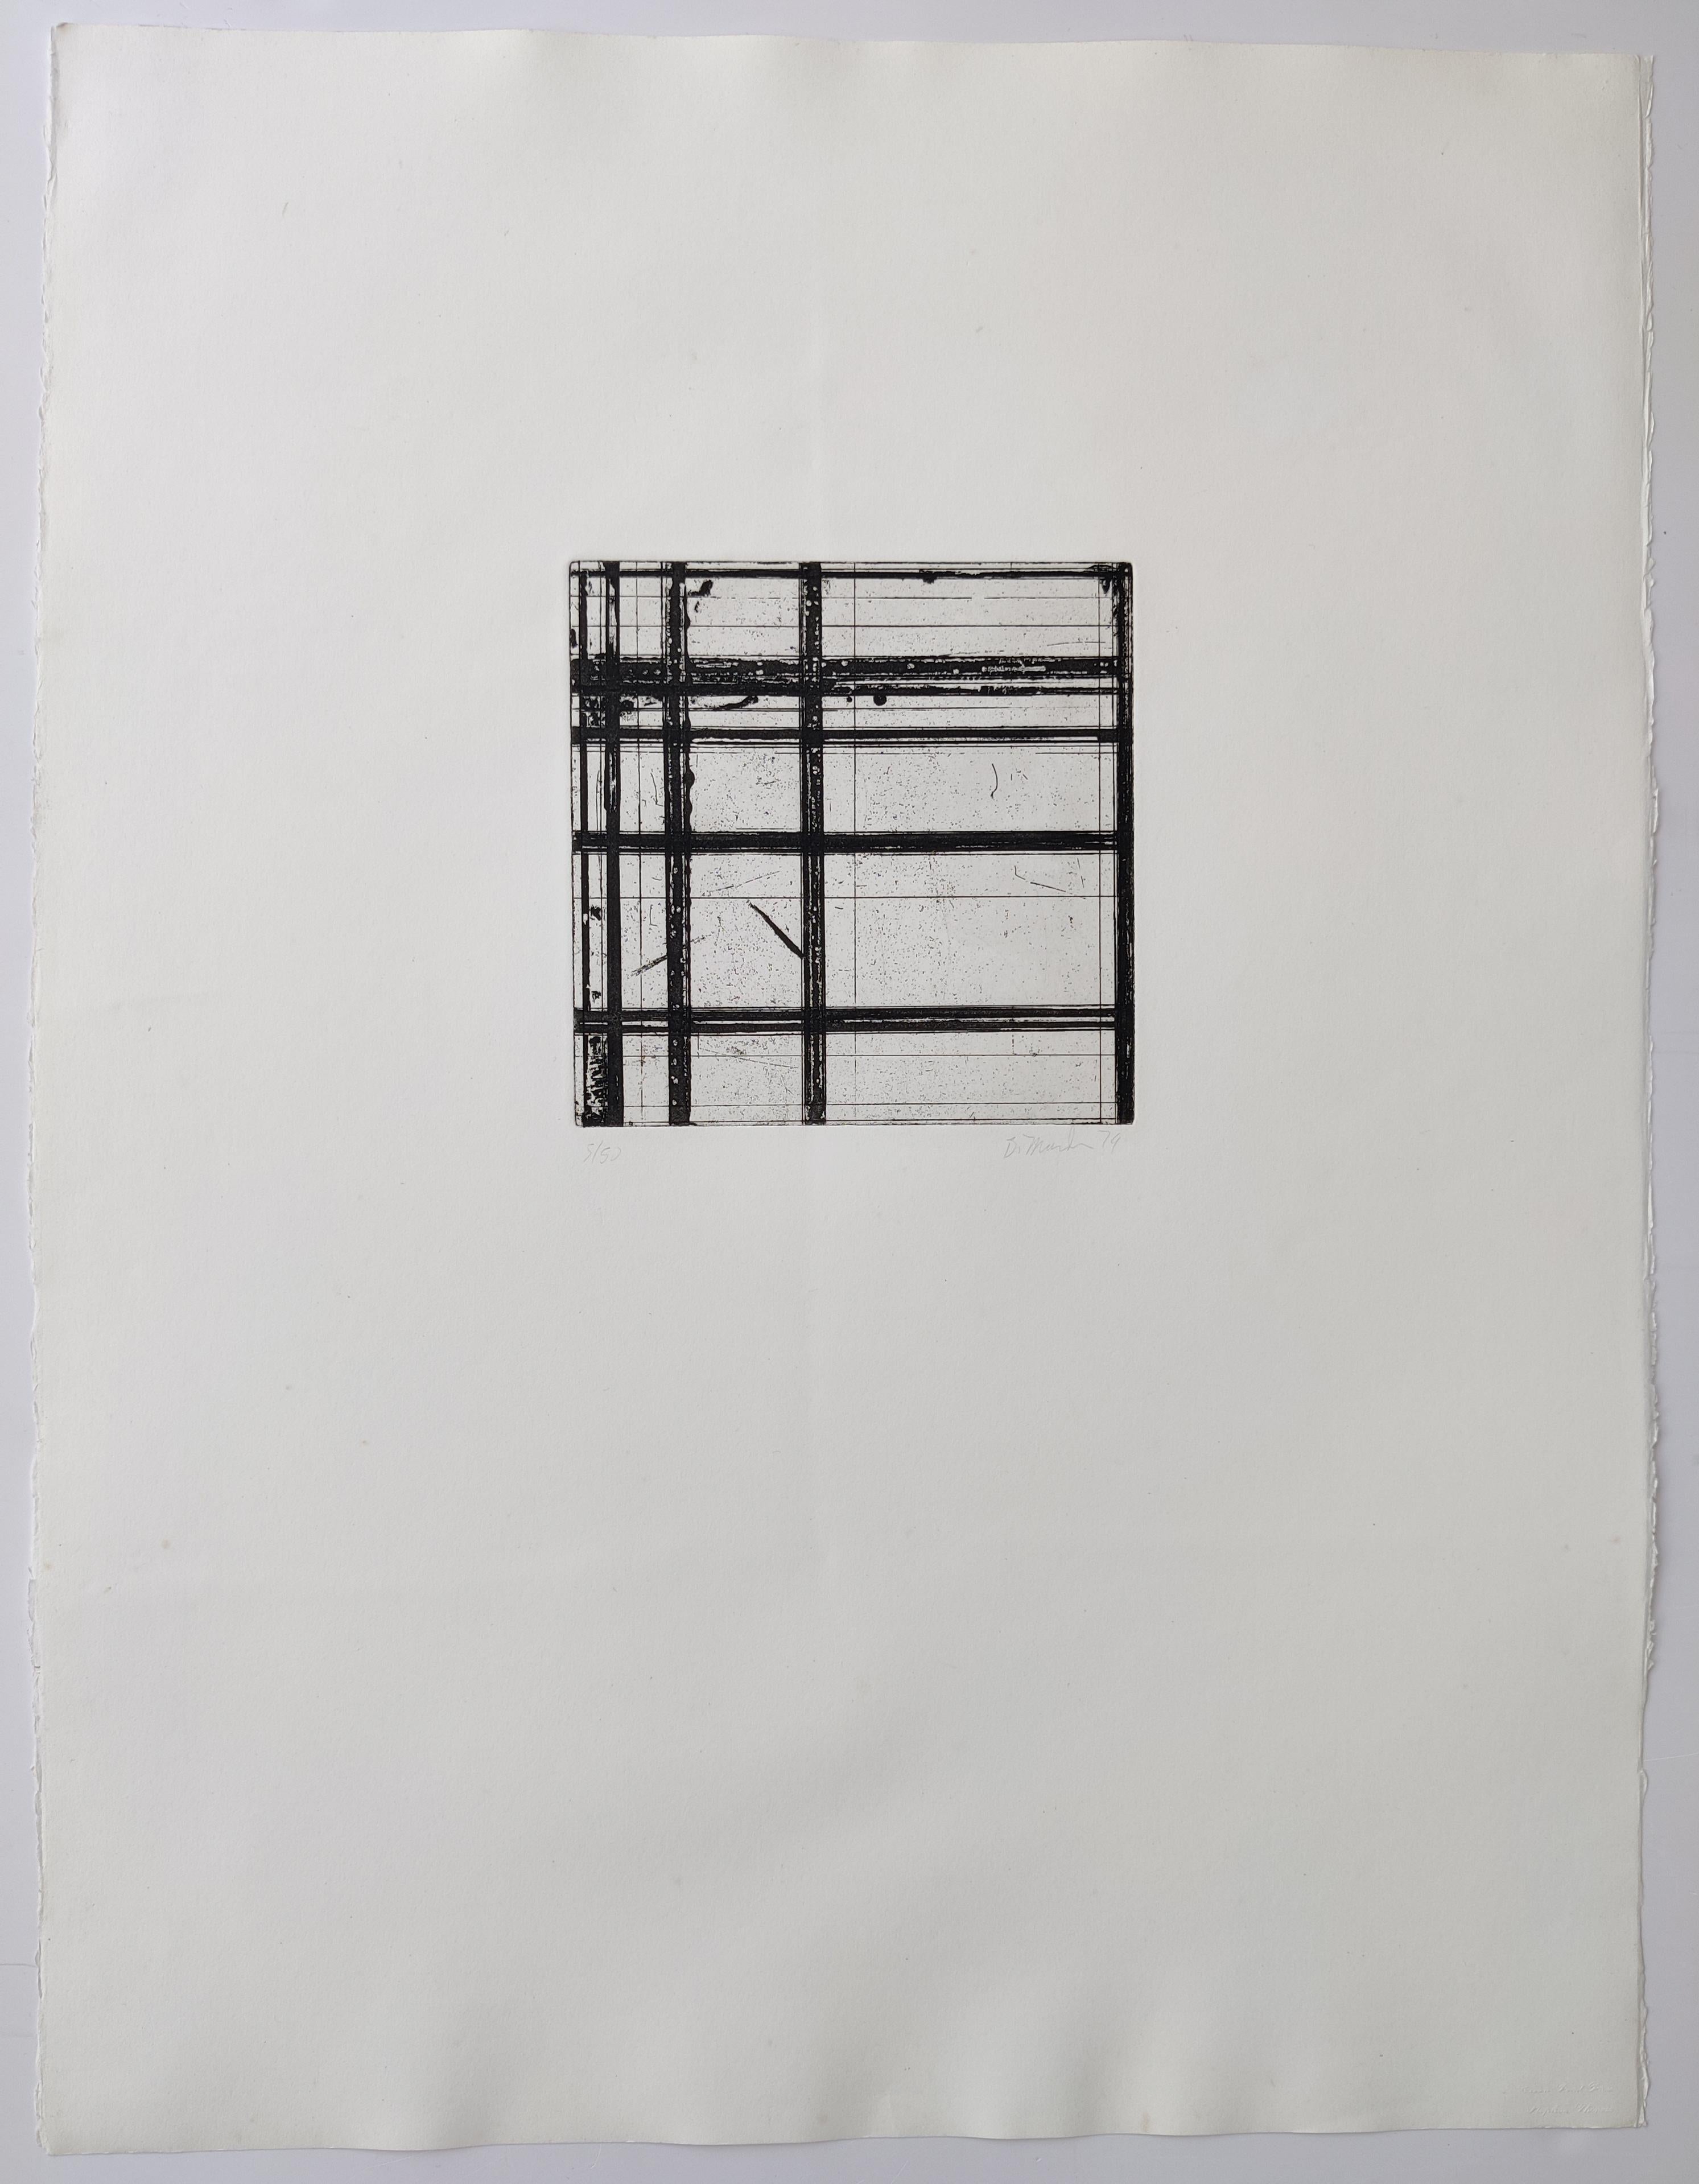 Brice Marden 
Kacheln, 1979
Radierung mit Aquatinta, auf Somerset-Satinpapier
Auflage 5 / 50 unten links
Hängend signiert und datiert unten rechts
Bildgröße 20 x 20 cm
Blattgröße 75 x 57 cm
Referenz   P07849